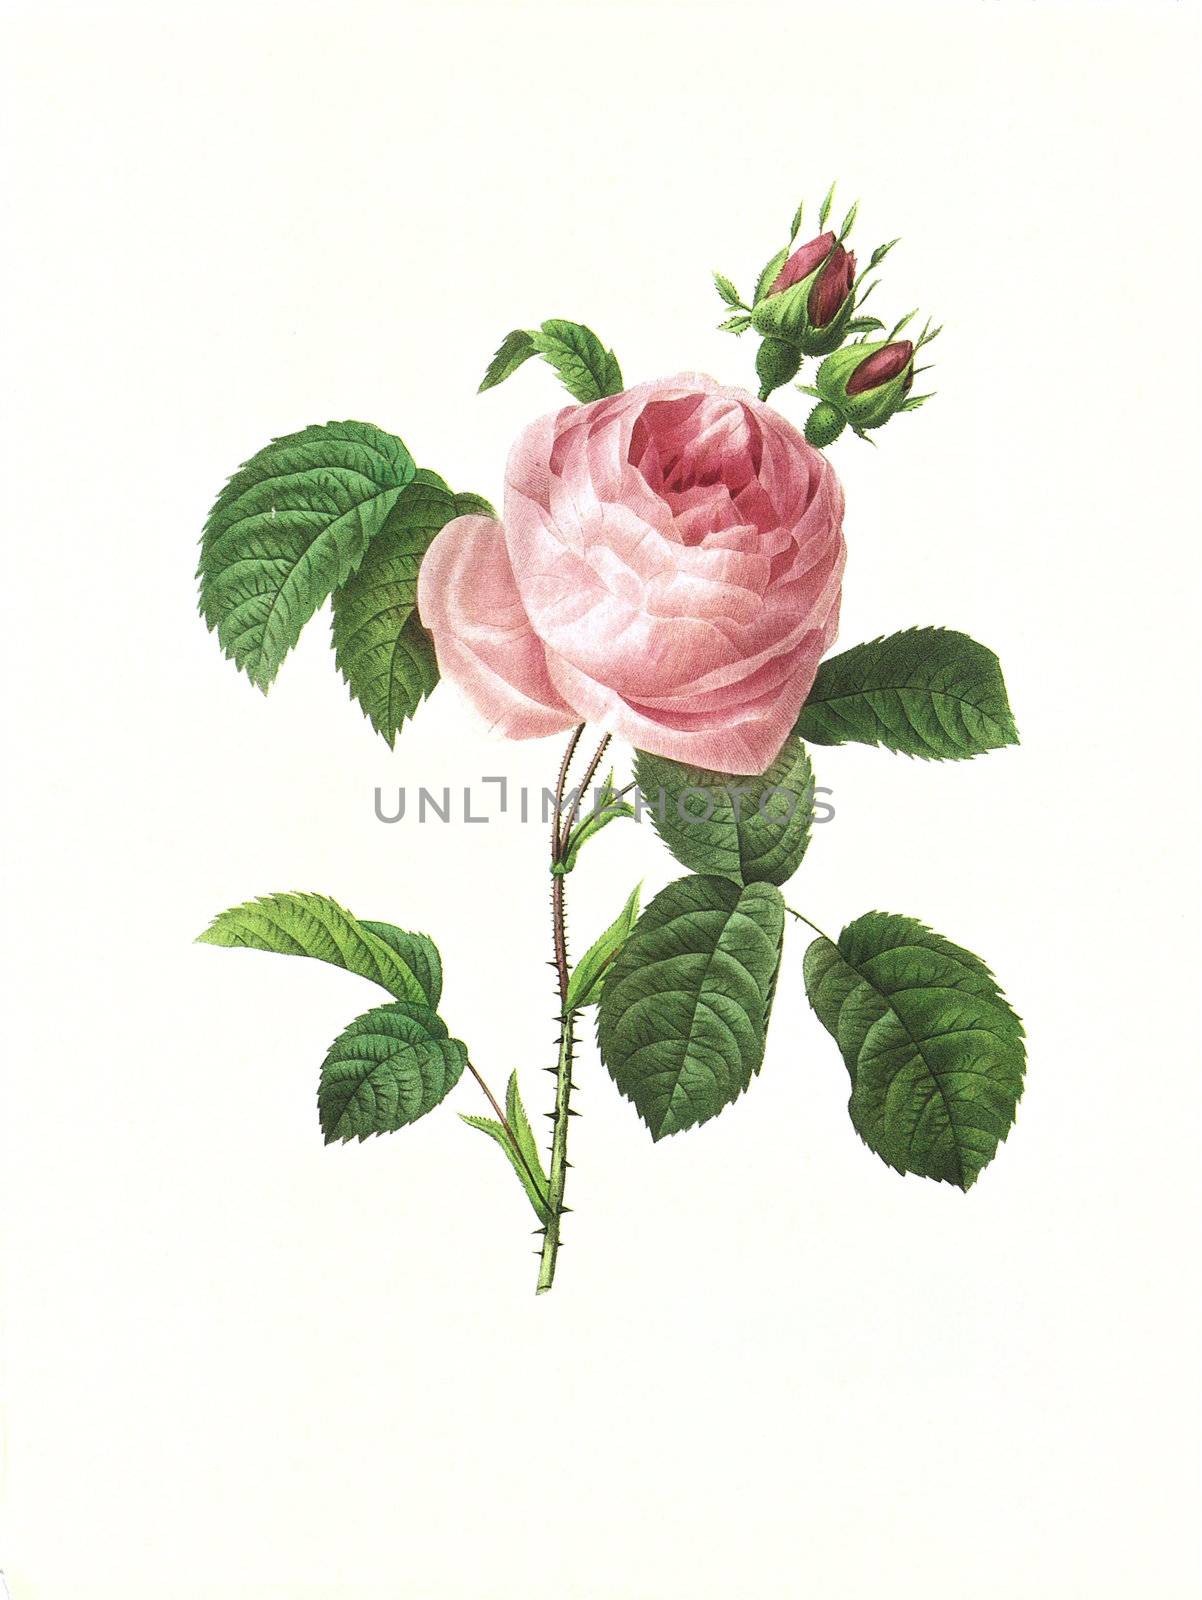 flower antique illustration rosa centifolia by matteobragaglio